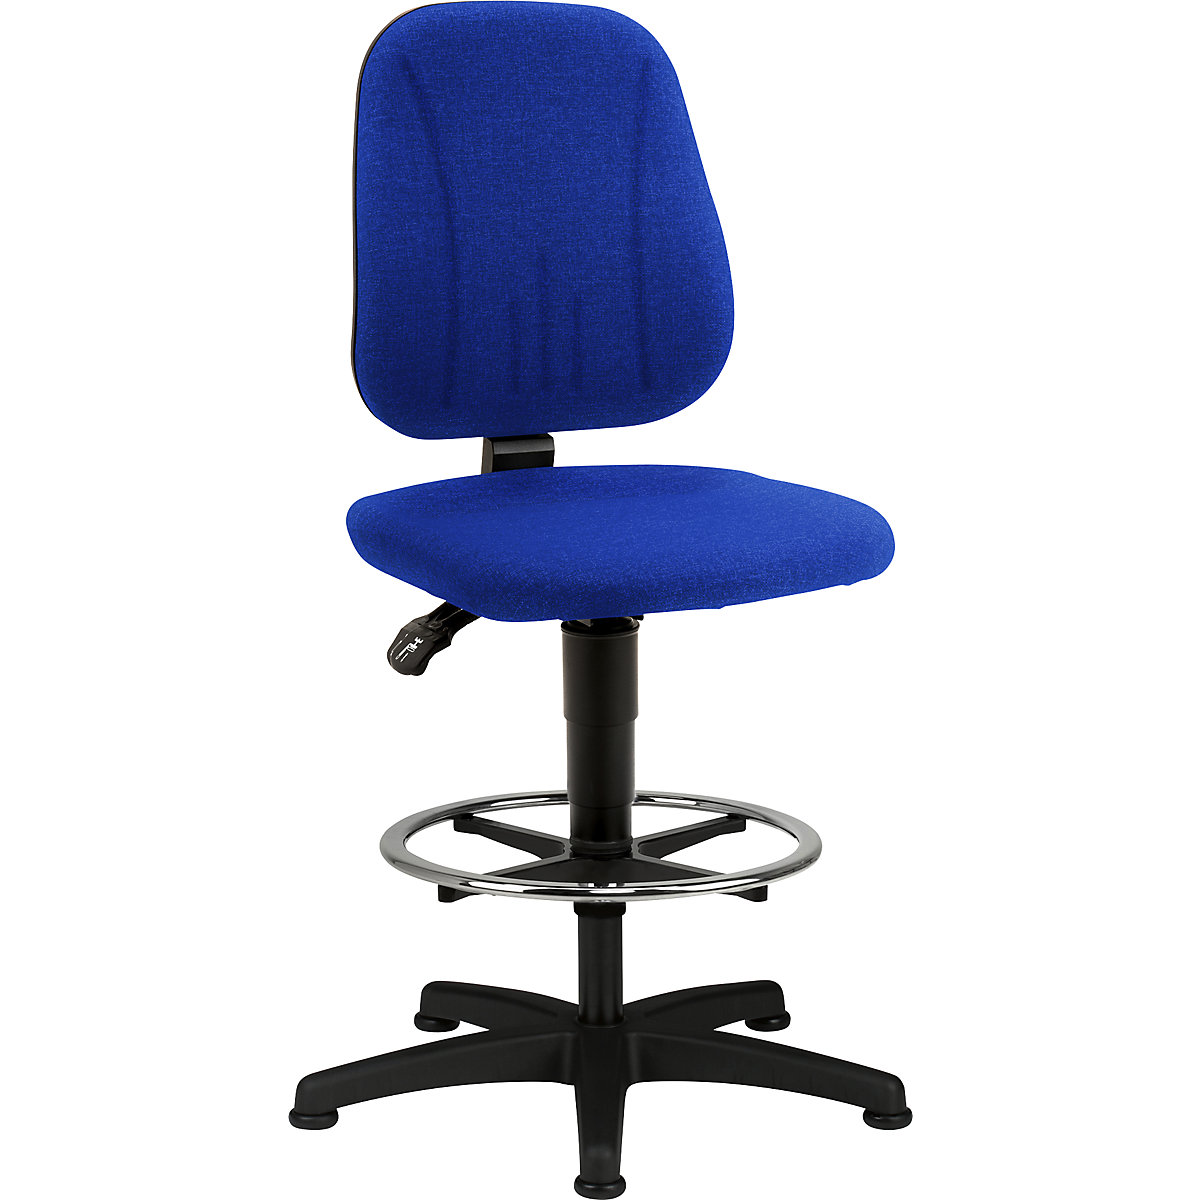 Okretni radni stolac – bimos, s namještanjem visine pomoću plinske opruge, presvlaka od tkanine, u plavoj boji, s podnim vodilicama i nožnim obručem-7